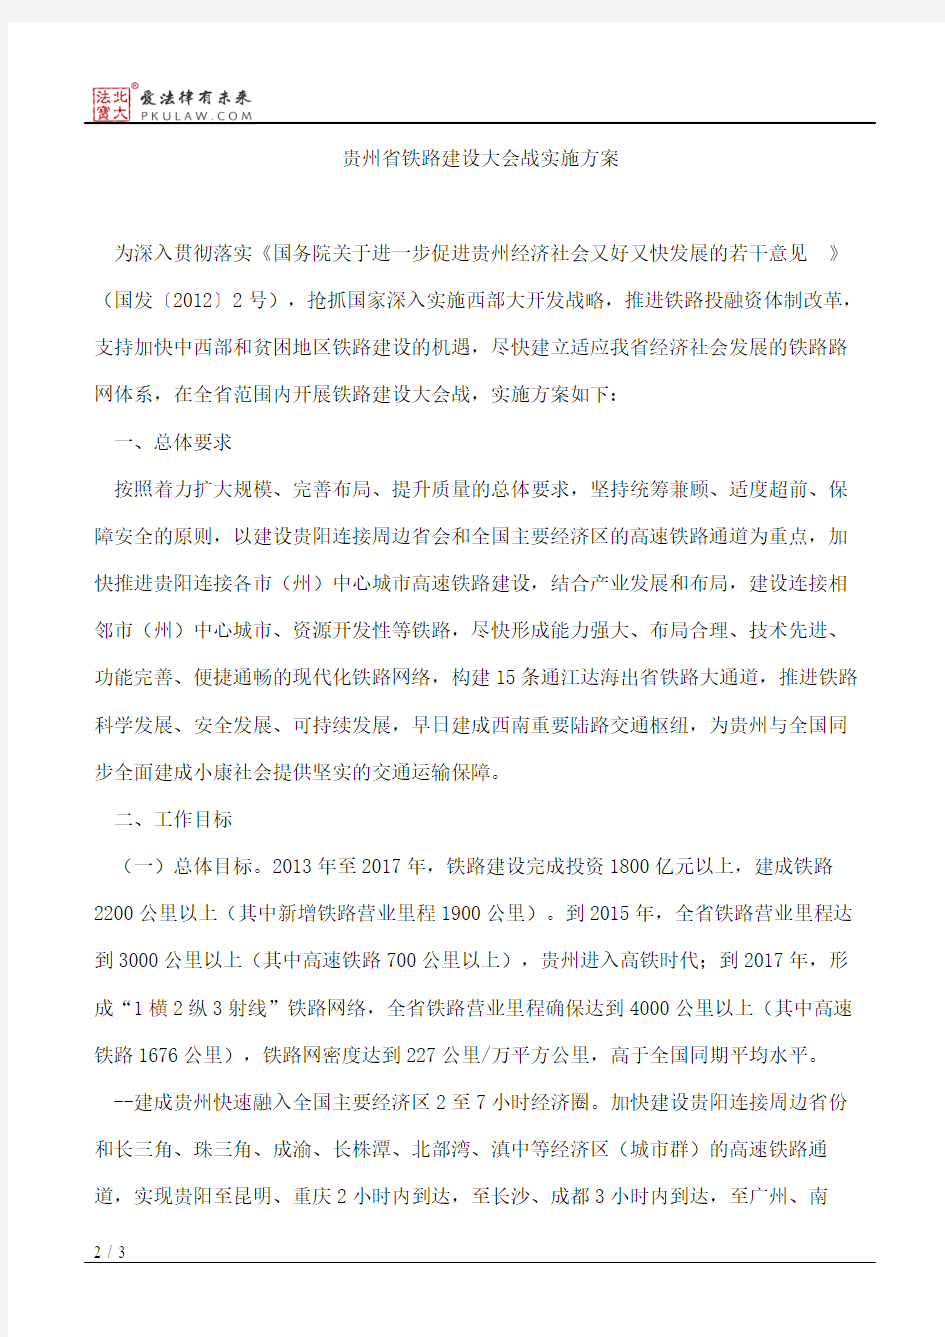 贵州省人民政府关于印发贵州省铁路建设大会战实施方案的通知